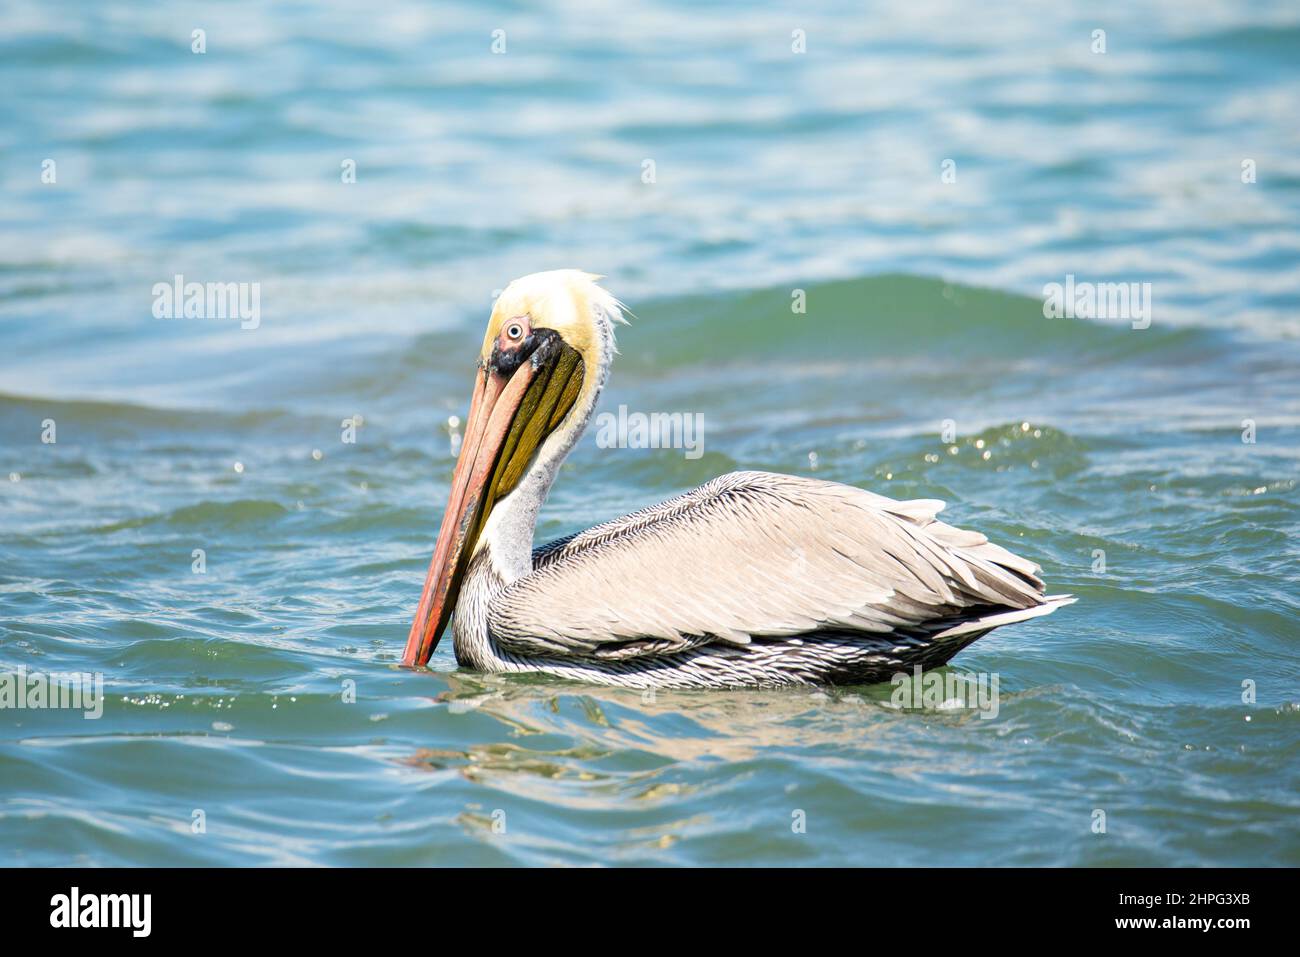 Brown pelican, Pelecanus occidentalis, in a beach swimming in water Stock Photo